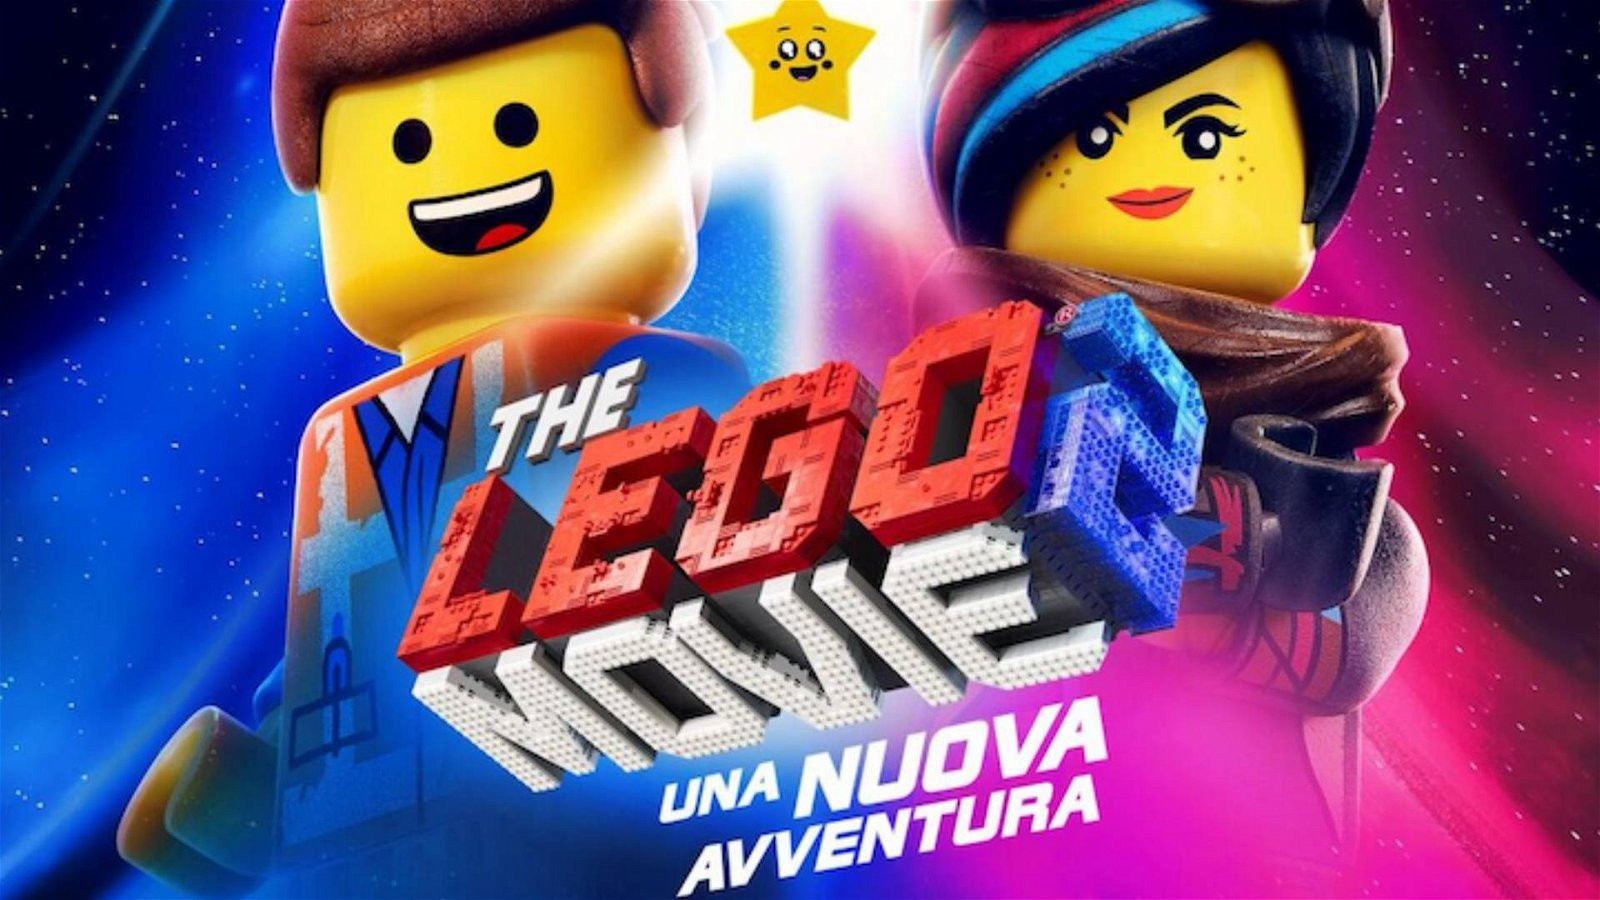 Immagine di The Lego Movie 2, nuovo trailer italiano